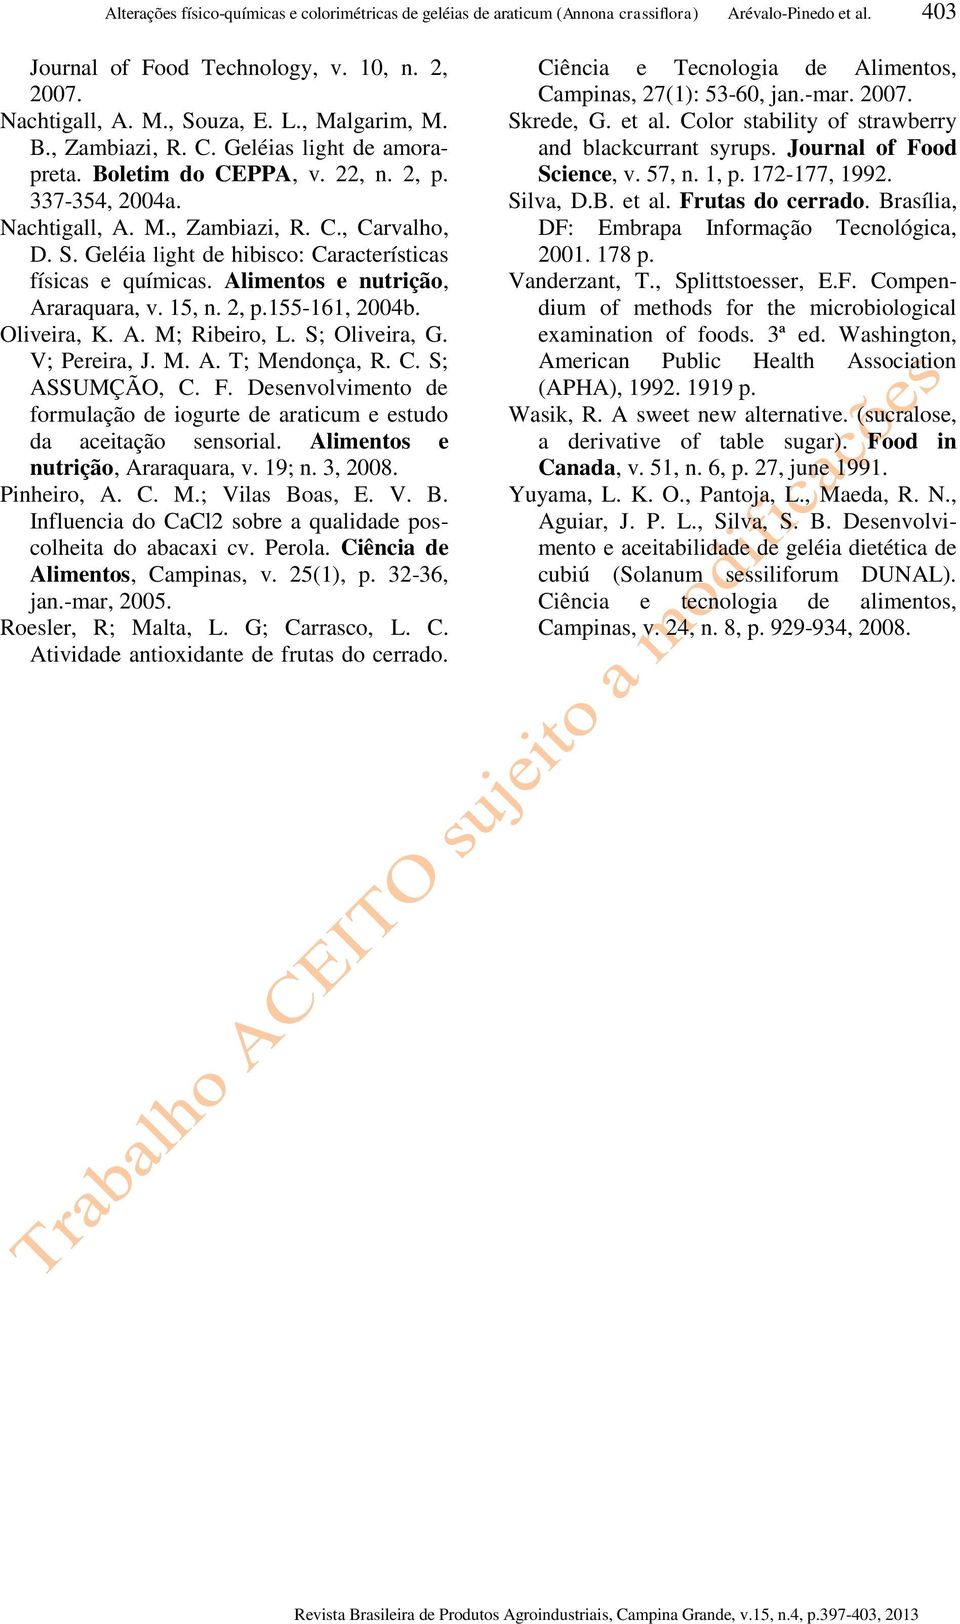 Geléia light de hibisco: Características físicas e químicas. Alimentos e nutrição, Araraquara, v. 15, n. 2, p.155-161, 2004b. Oliveira, K. A. M; Ribeiro, L. S; Oliveira, G. V; Pereira, J. M. A. T; Mendonça, R.